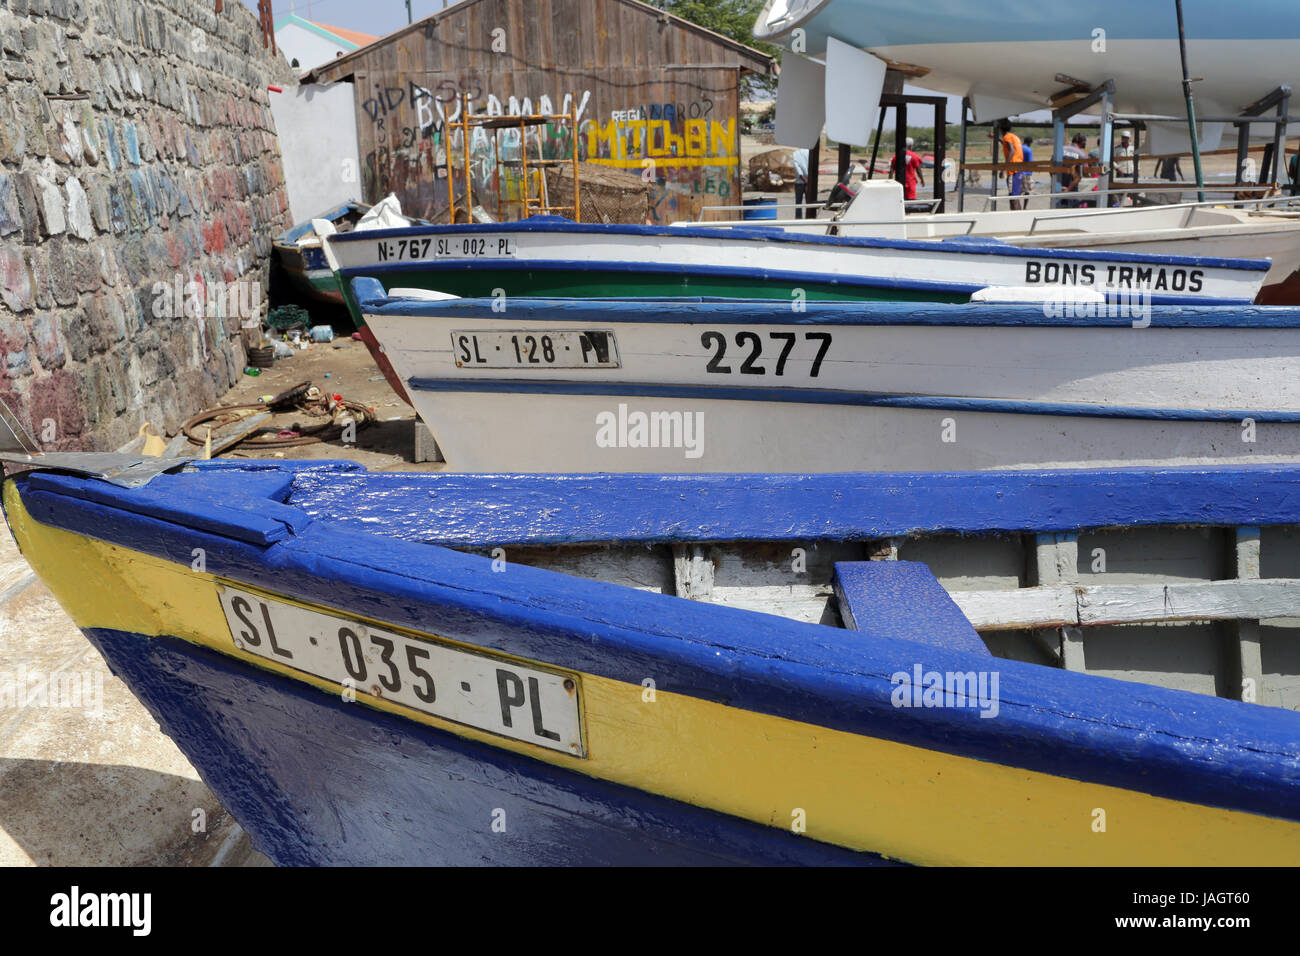 Fishing boats in Palmeria Cape Verde Stock Photo